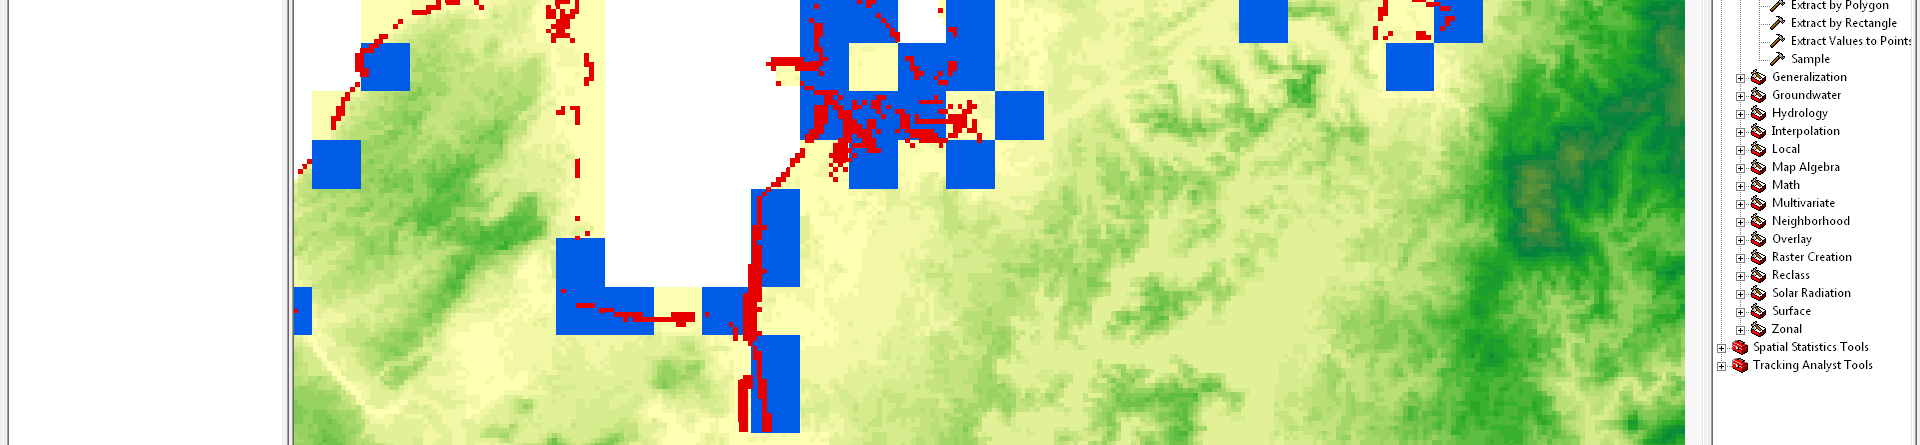 En el color rojo son celdas del DEM de 90m, y en el color azul de 1km.